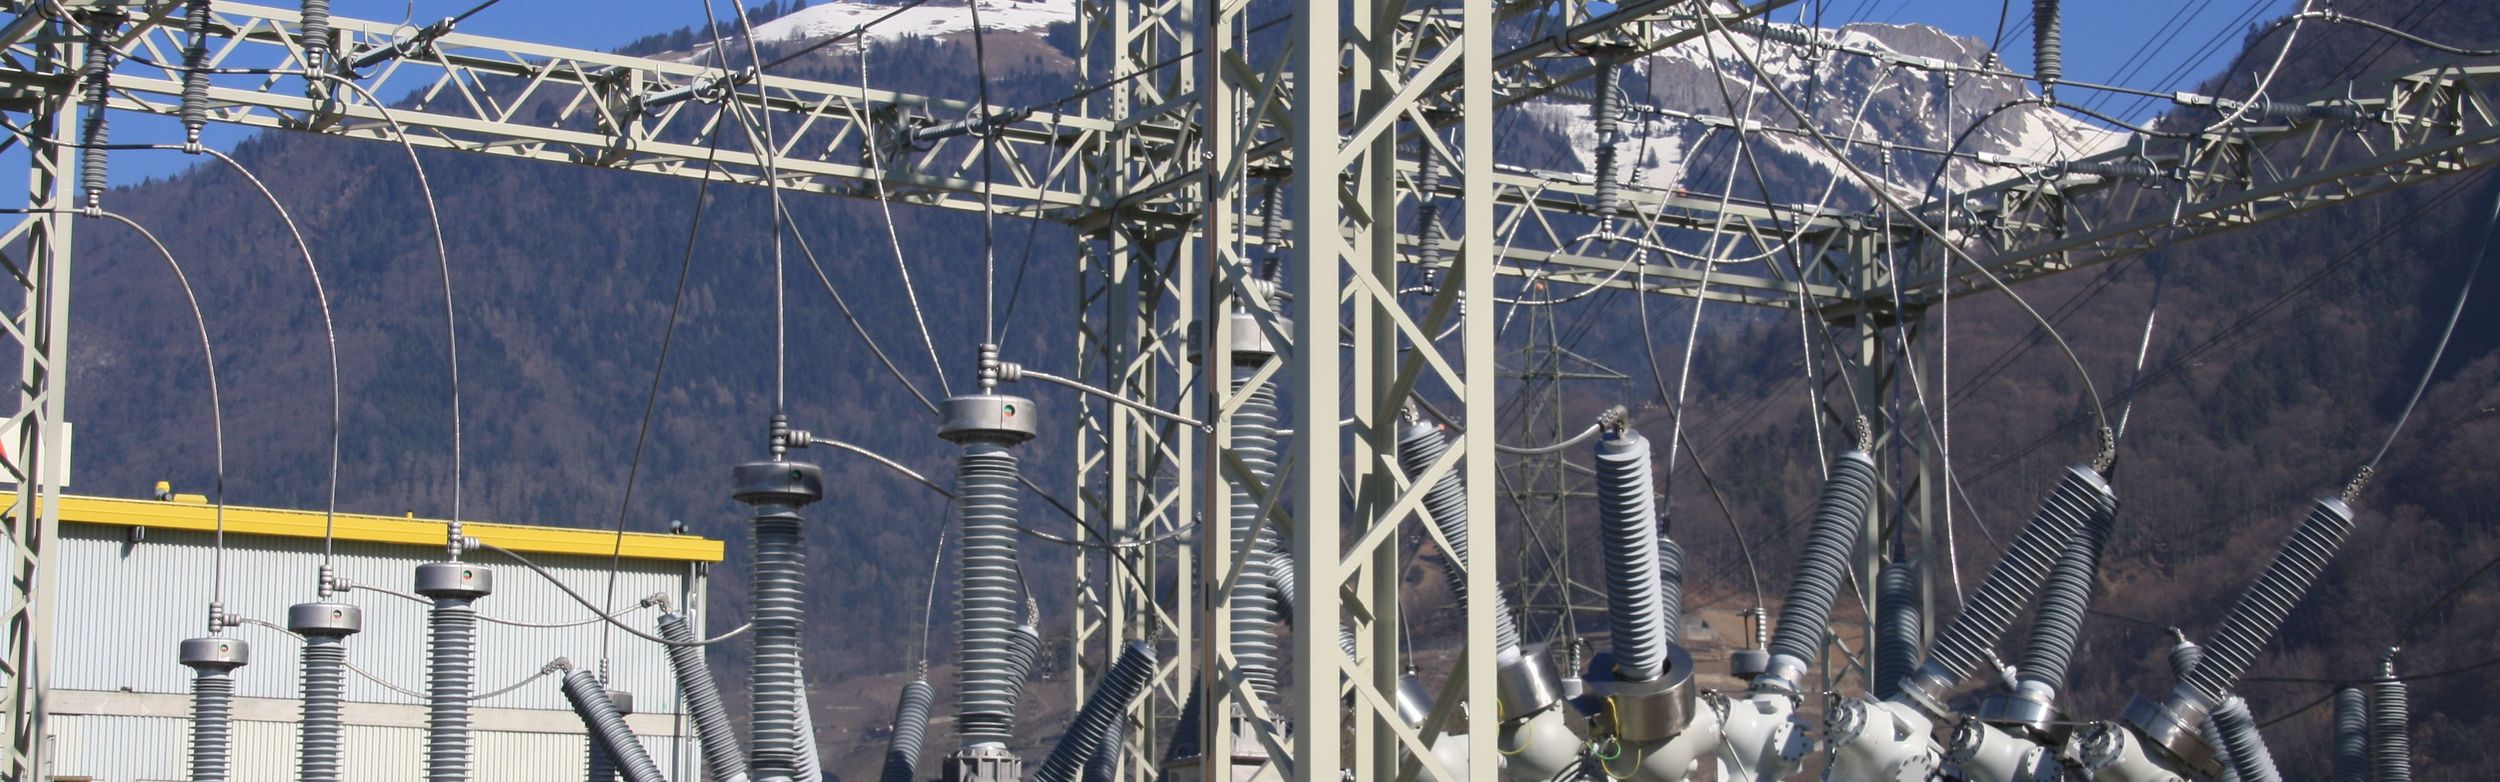 EOF current transformer, substation Villeneuve